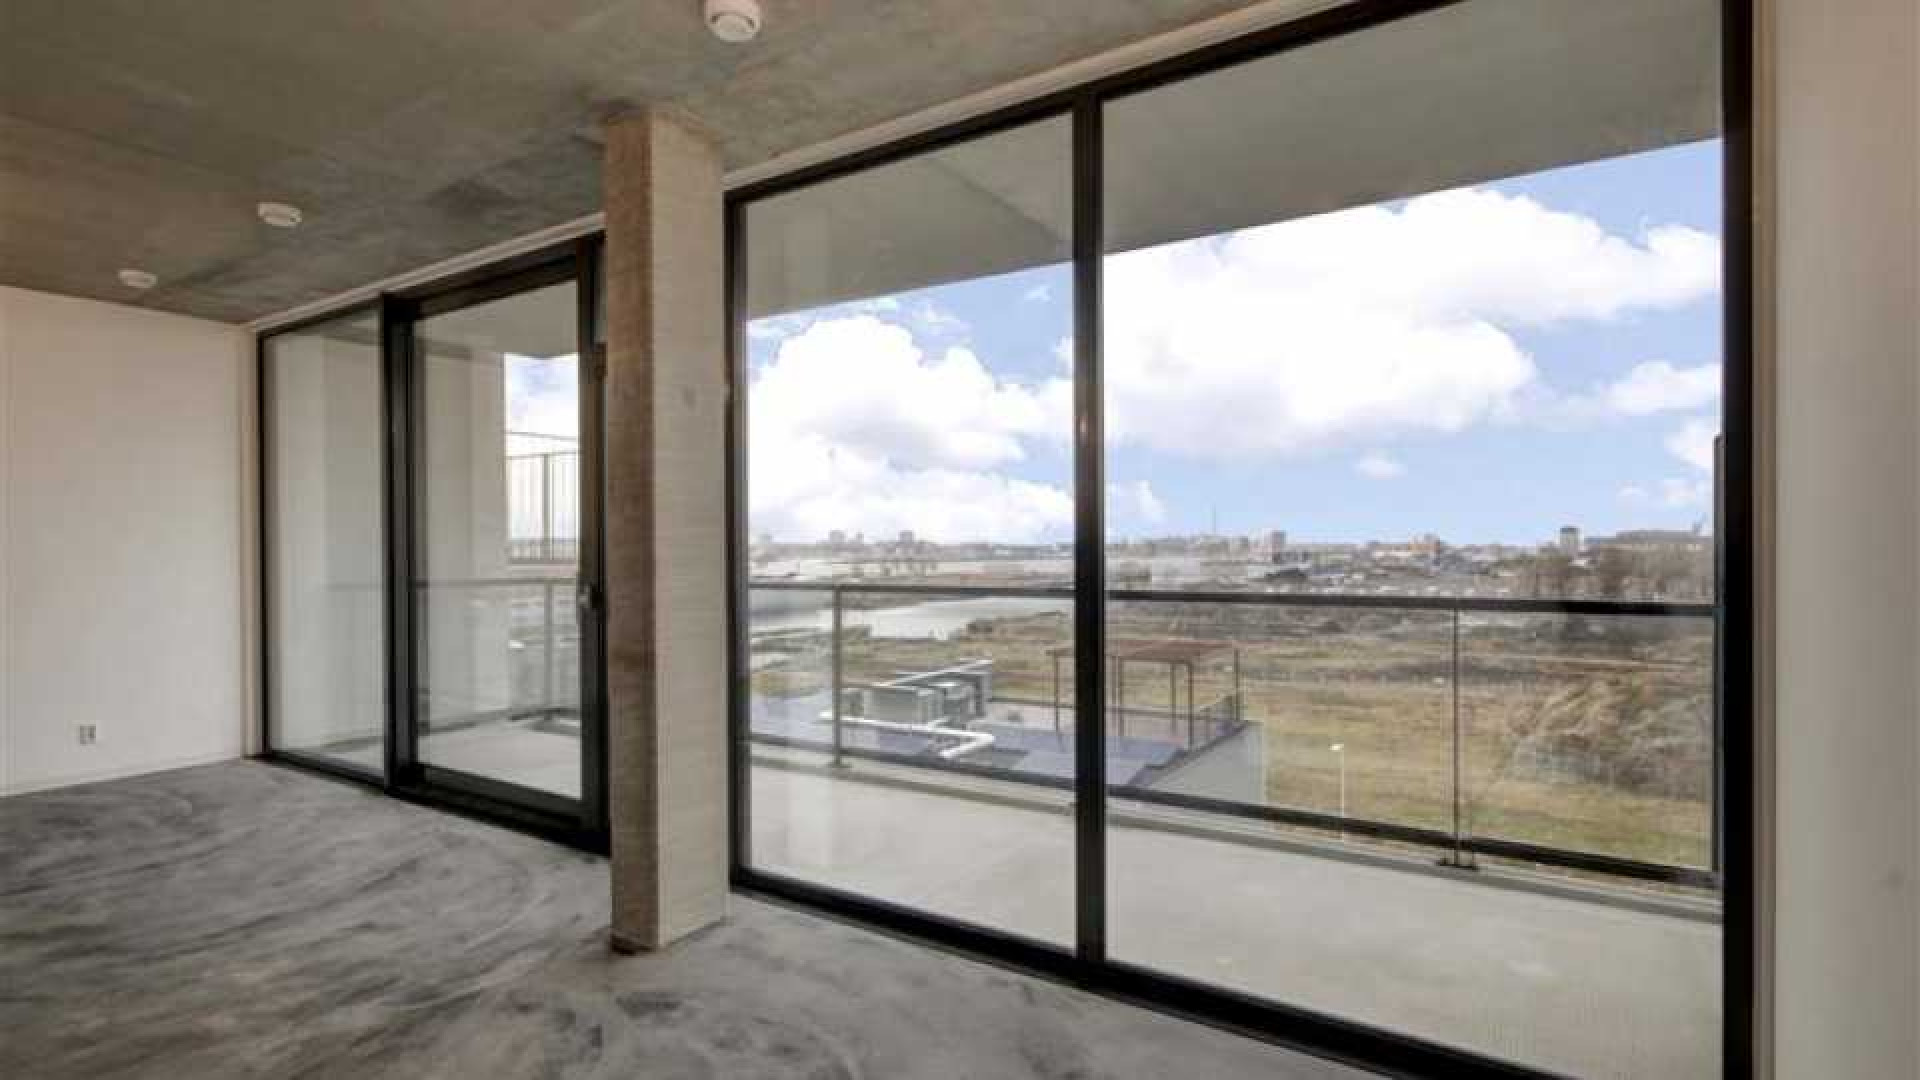 Ruben Nicolai koopt luxe en bijzonder appartement van bijna 1 miljoen euro. Zie foto's